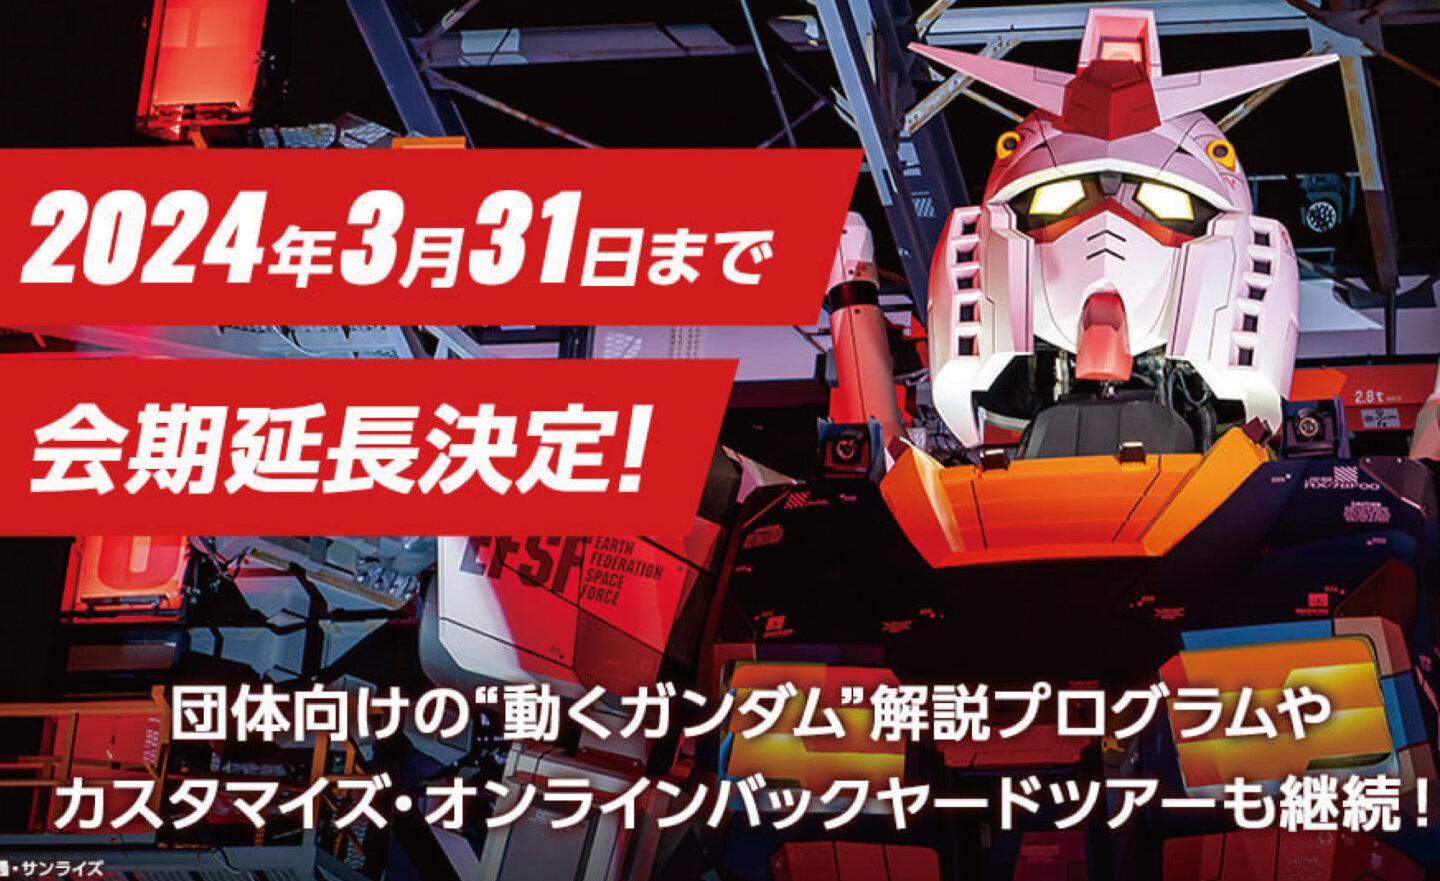 鋼彈迷有福了！日本橫濱 18 公尺巨型鋼彈展期延長一年